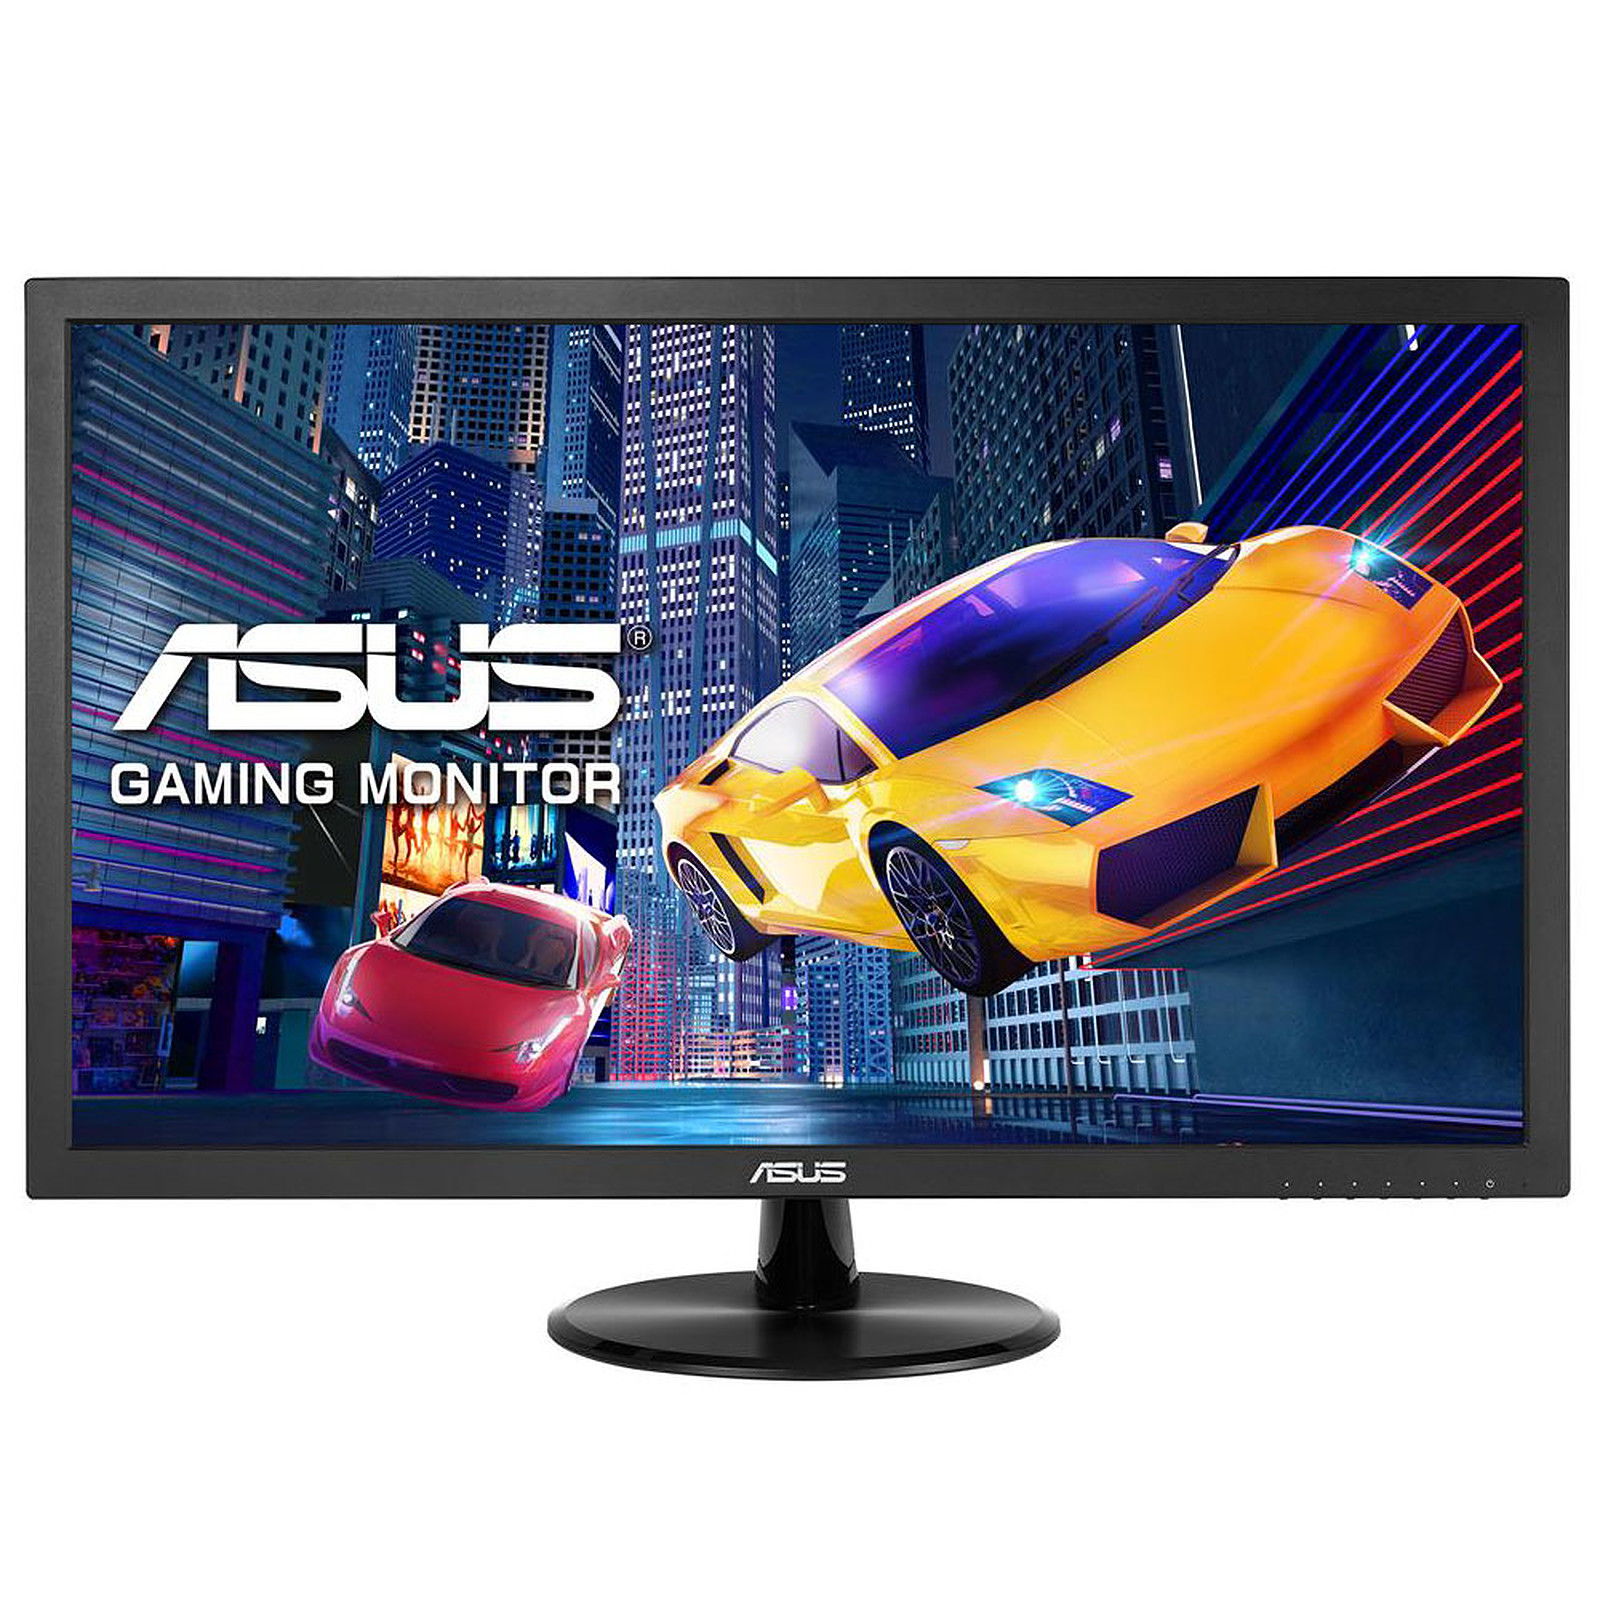 L'écran PC incurvé Asus TUF Gaming VG24VQ est en promotion